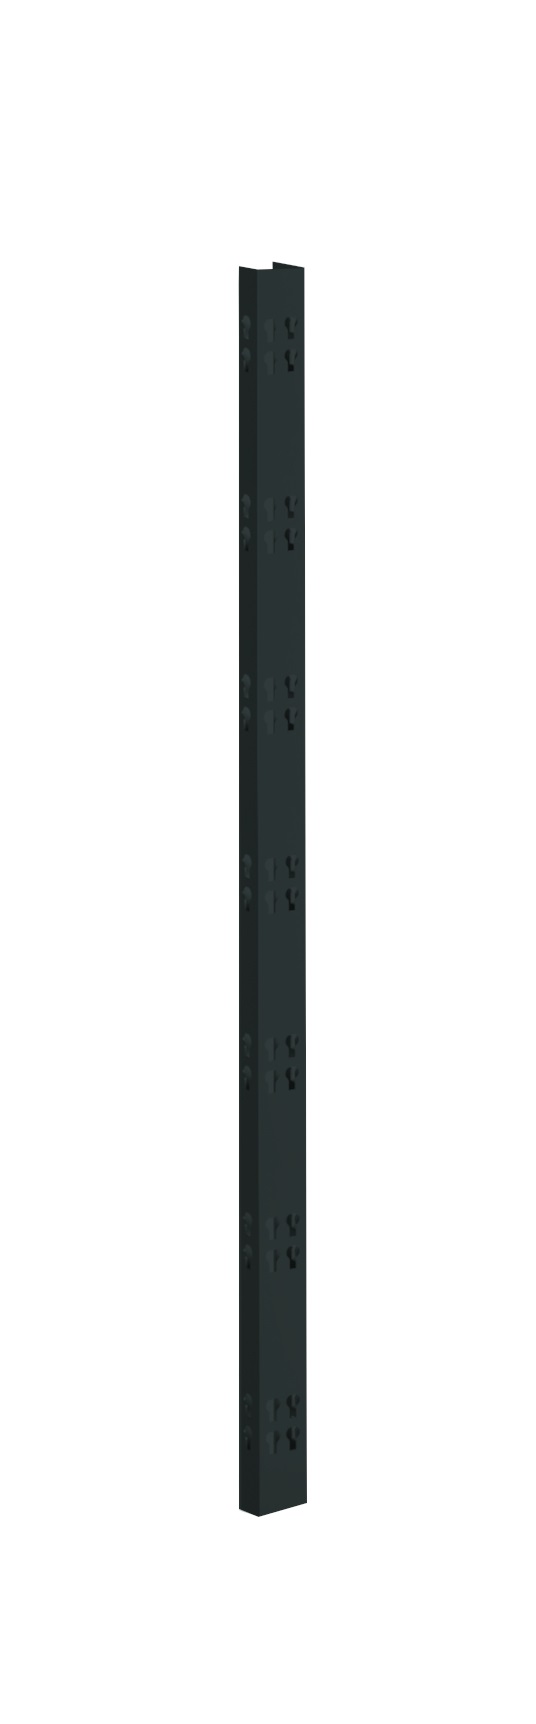 2 Profi-Stecksystem C-Holme, 195x4,2x2,8 cm (HxBxT), schwarz